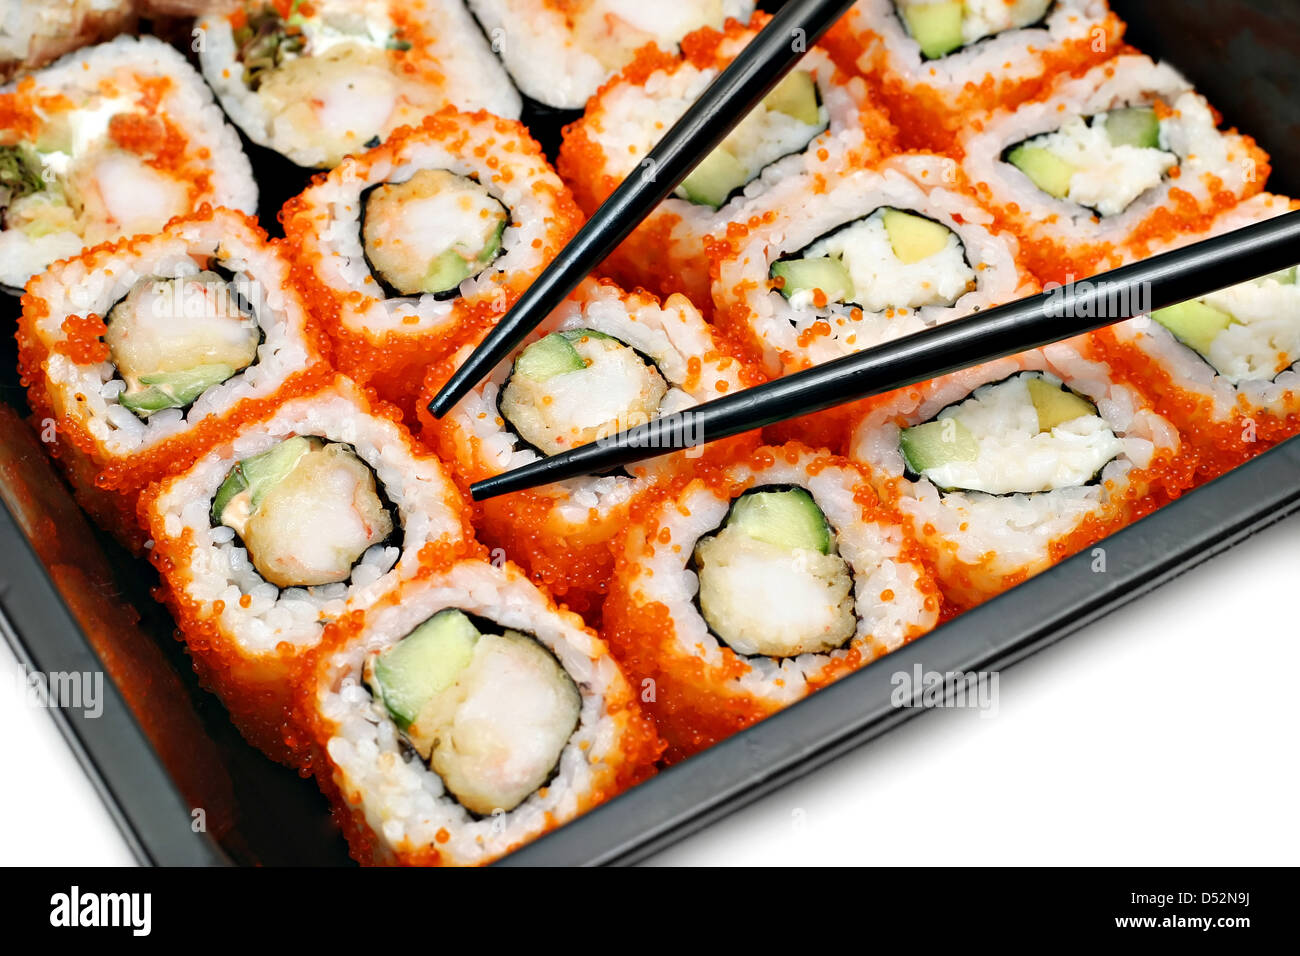 Где самые вкусные суши в калининграде с доставкой фото 25